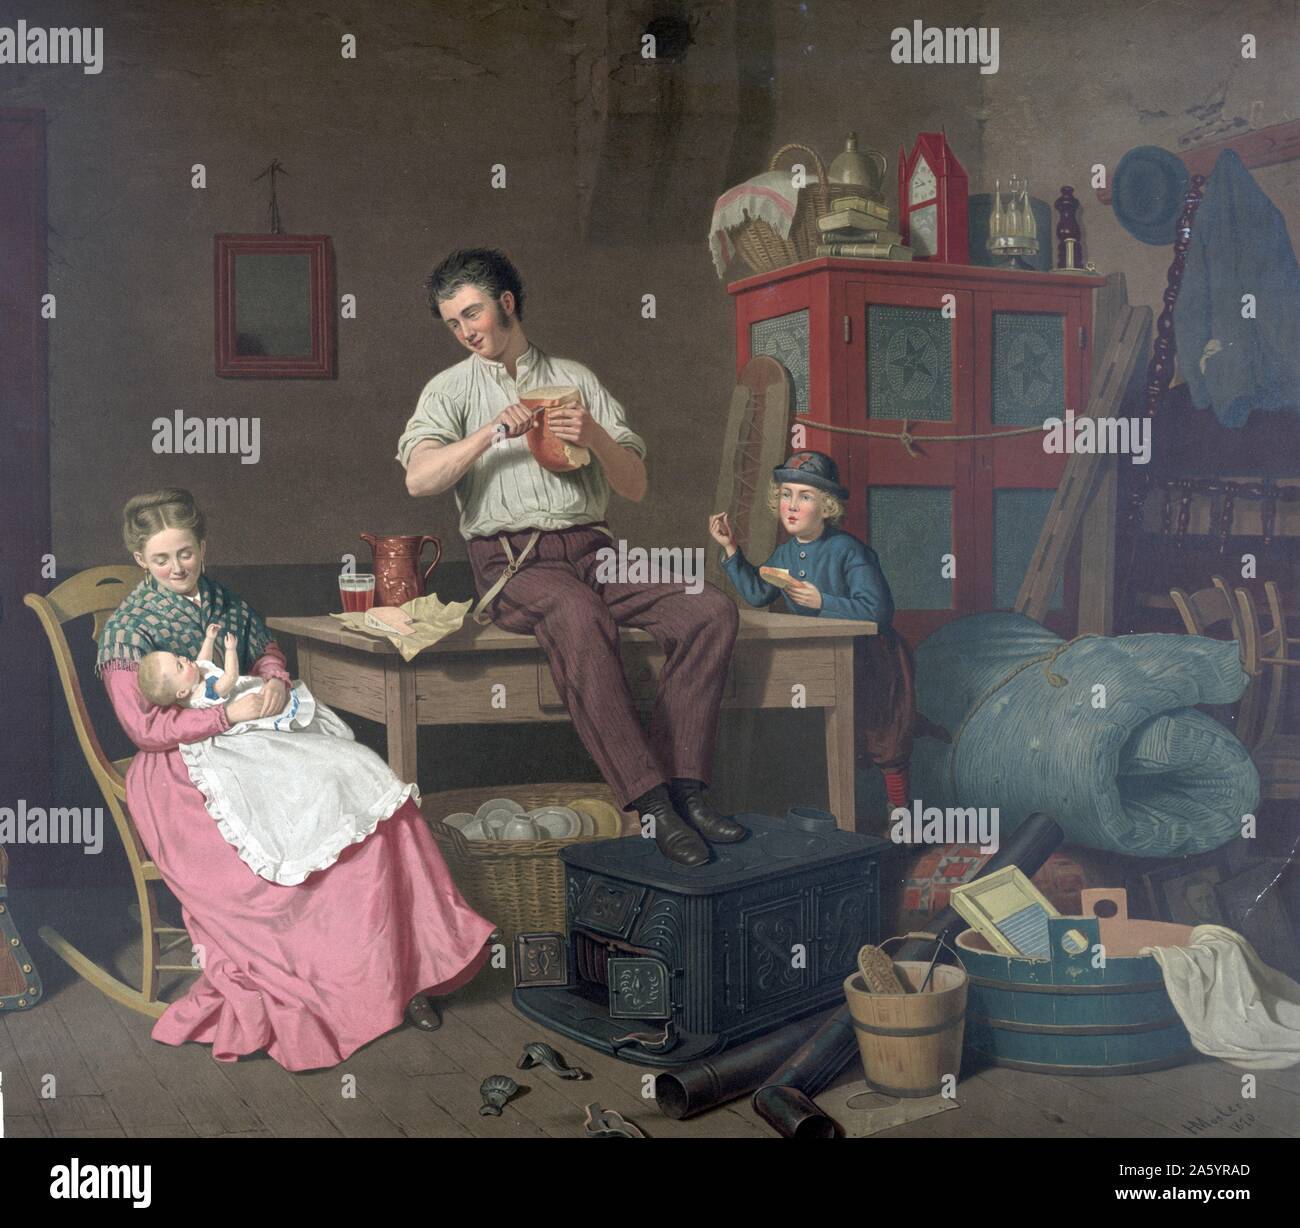 Farblitho drucken Darstellung eine häusliche Szene mit einer Familie in einem Raum. Basierend auf dem Original von Henry Mosler 1841-1920). Vom 1870 Stockfoto